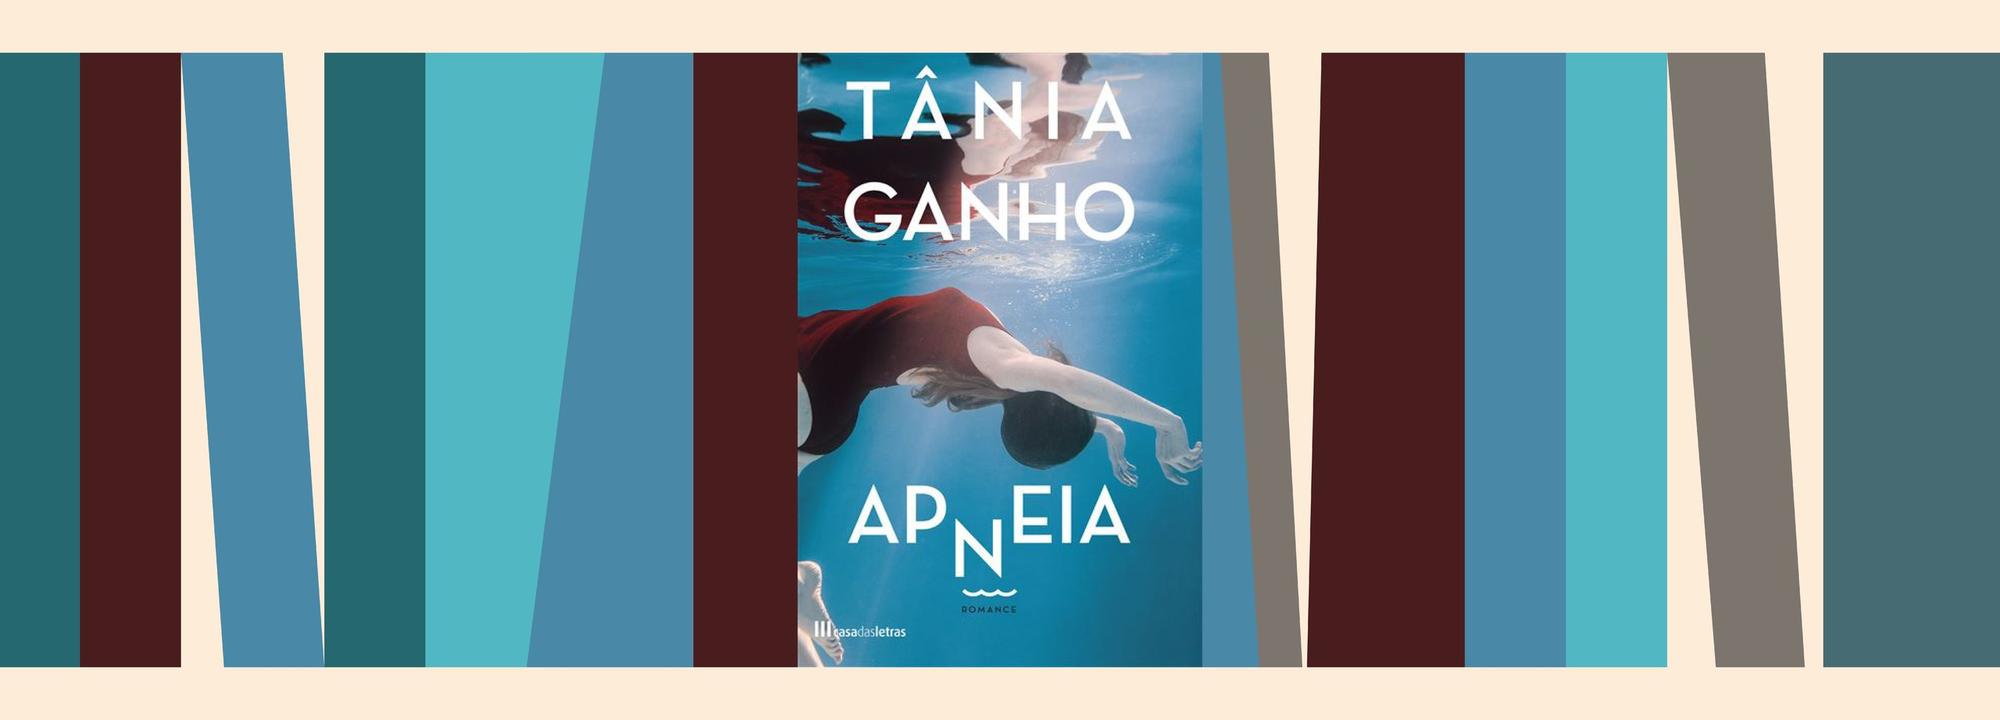 Biblioteca Municipal recebe a escritora Tânia Ganho na apresentação do livro “Apneia”